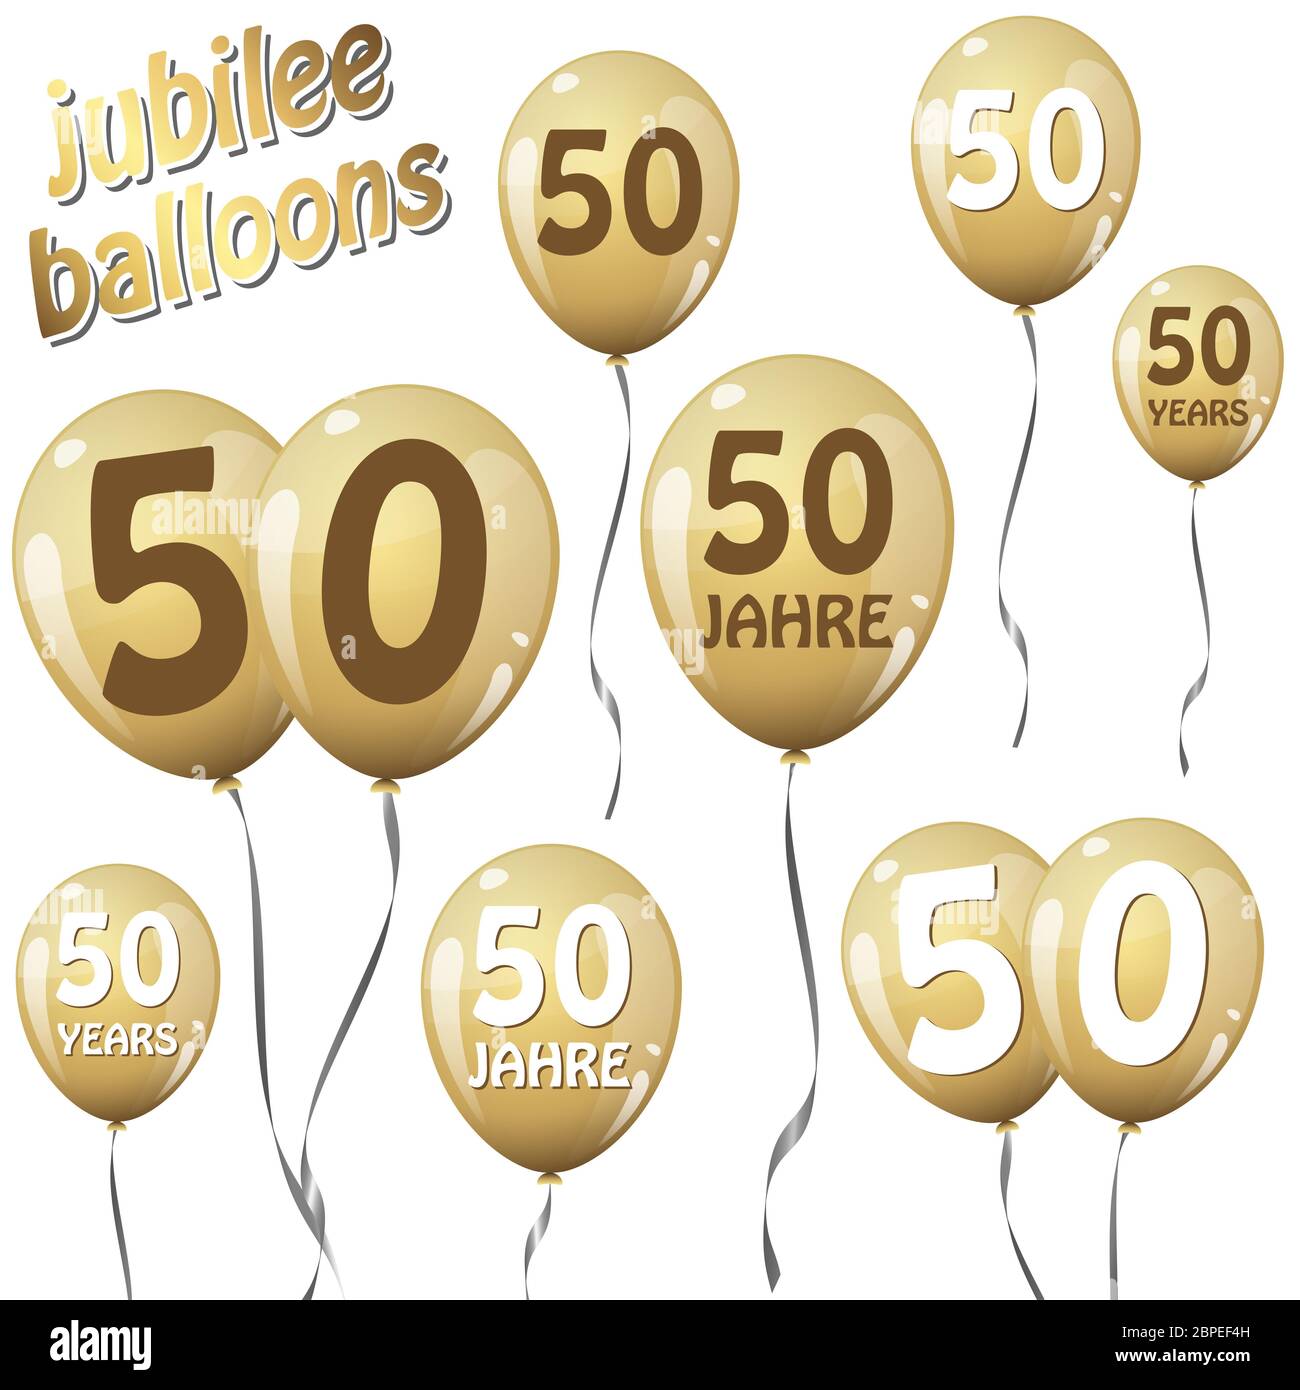 globos de jubileo de oro durante 50 años en inglés y alemán Foto de stock